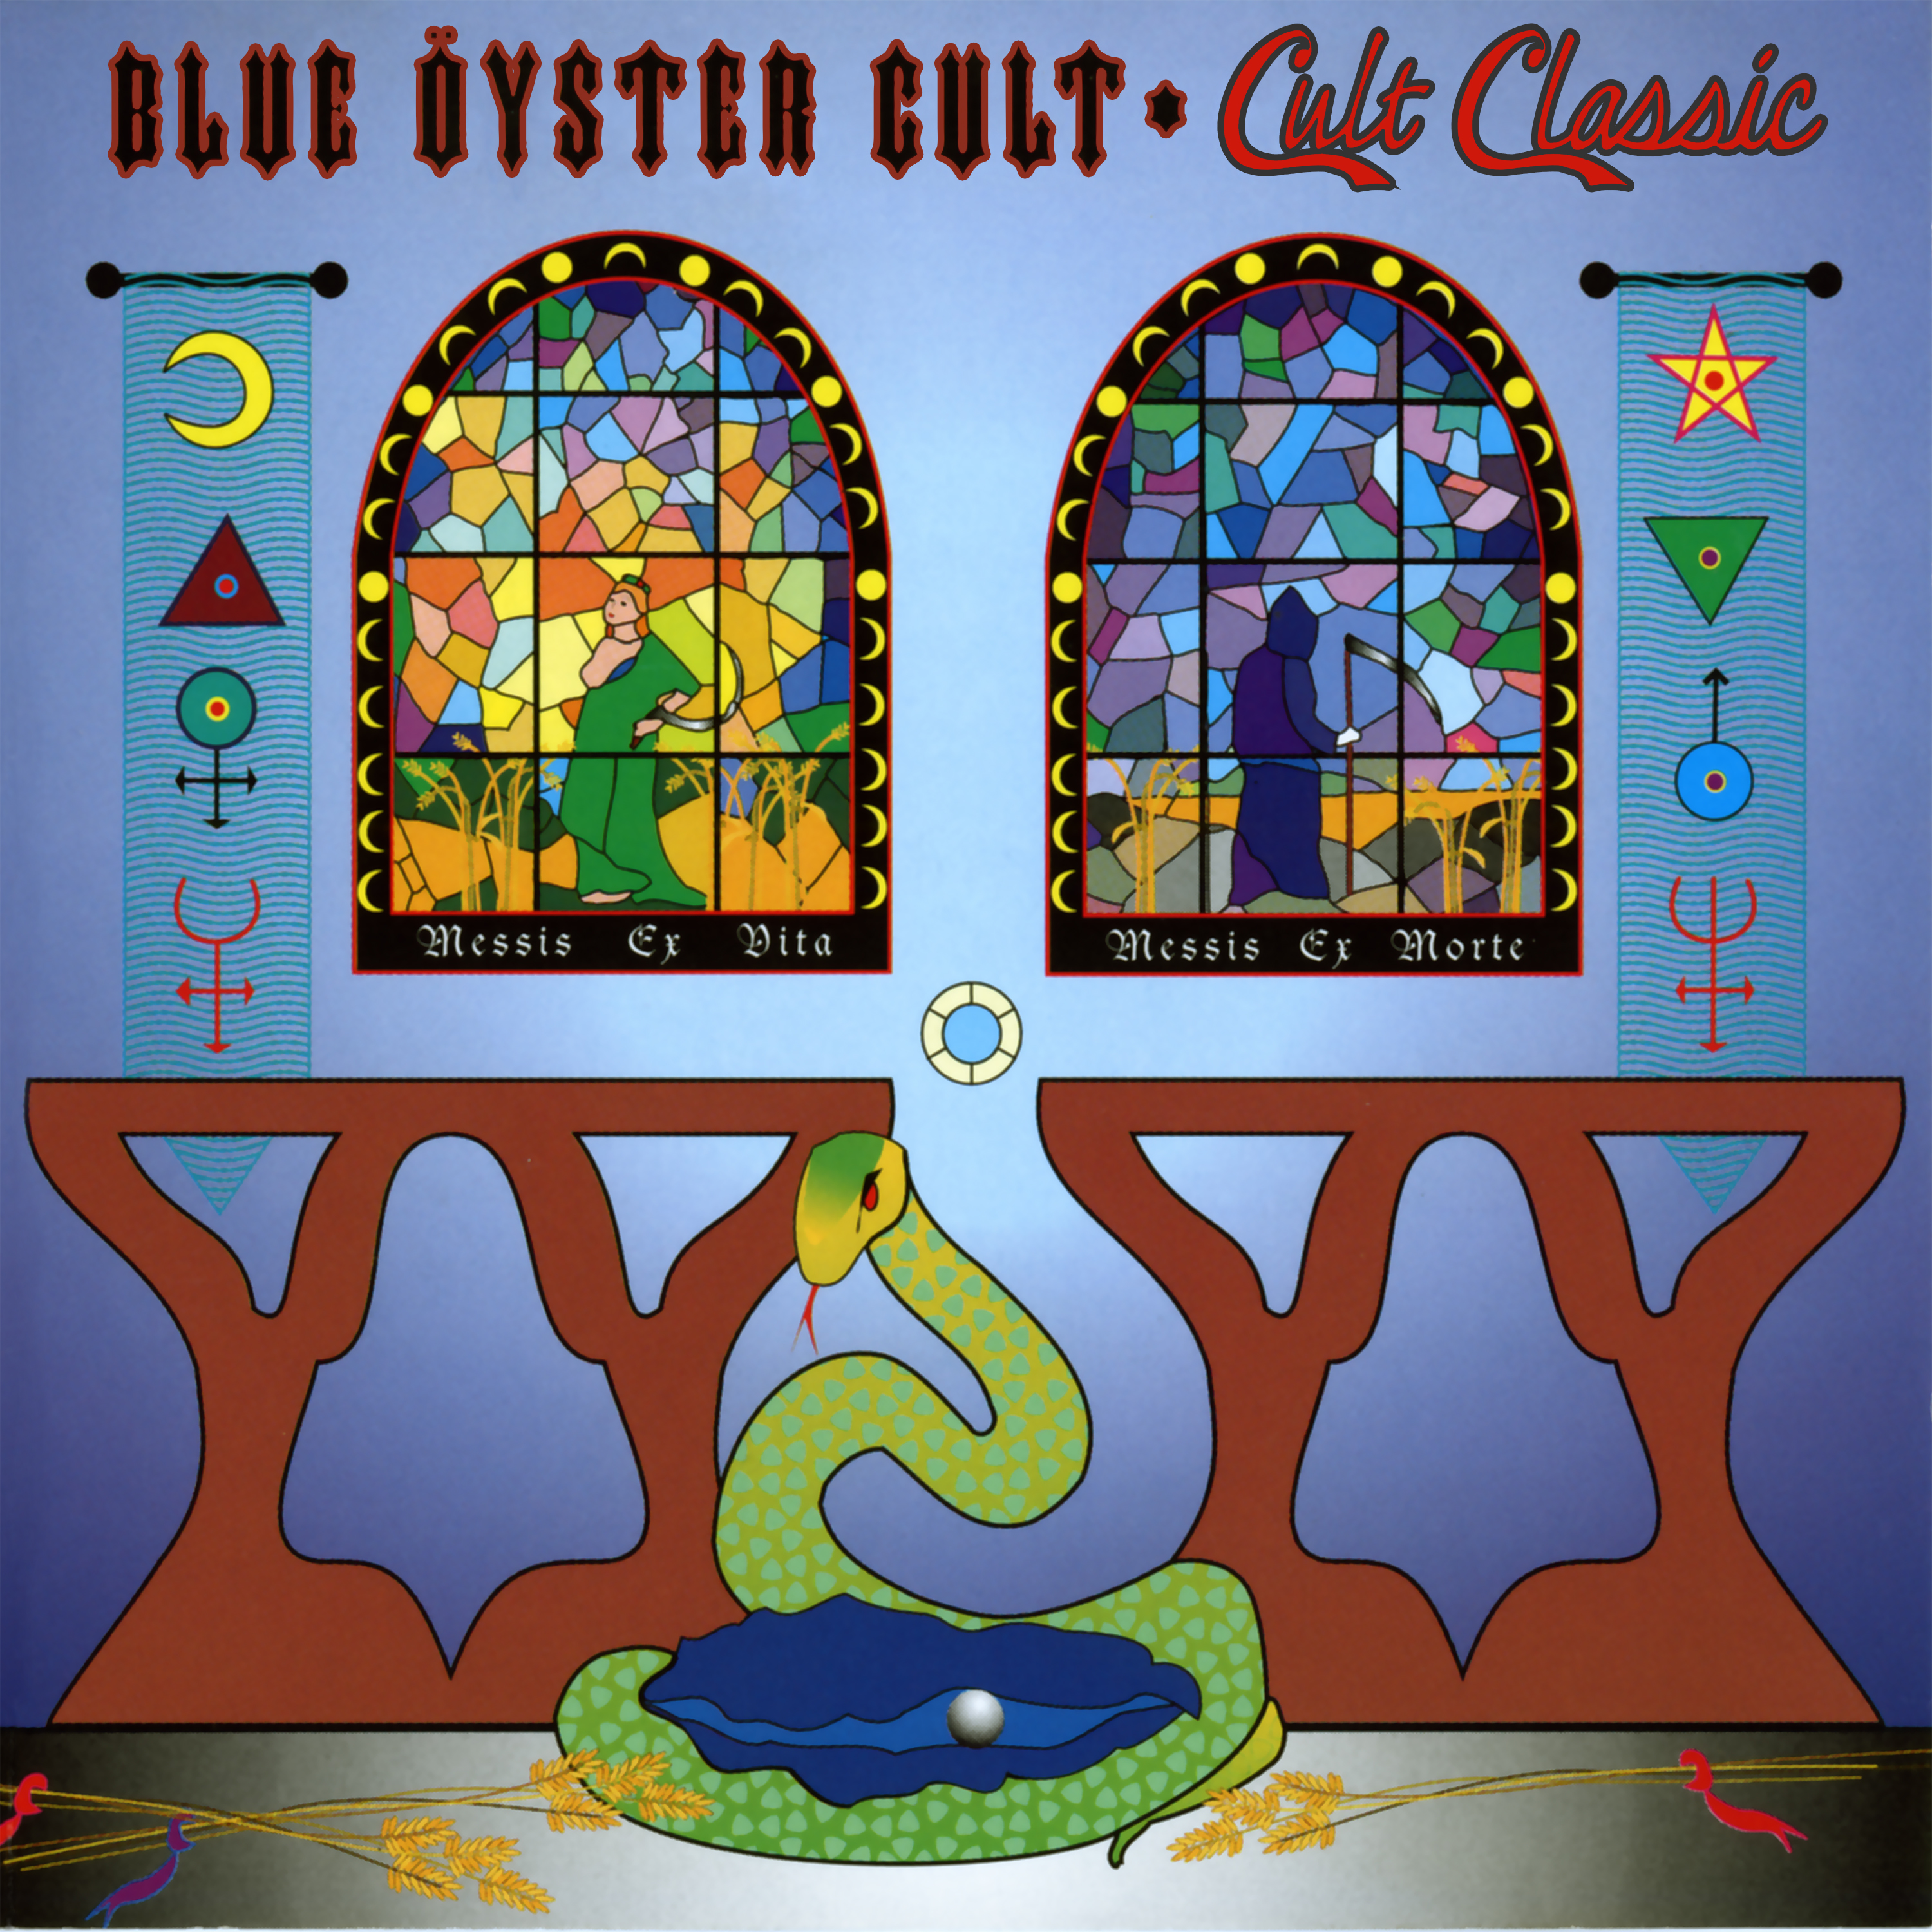 Blue  yster Cult - Cult Classics